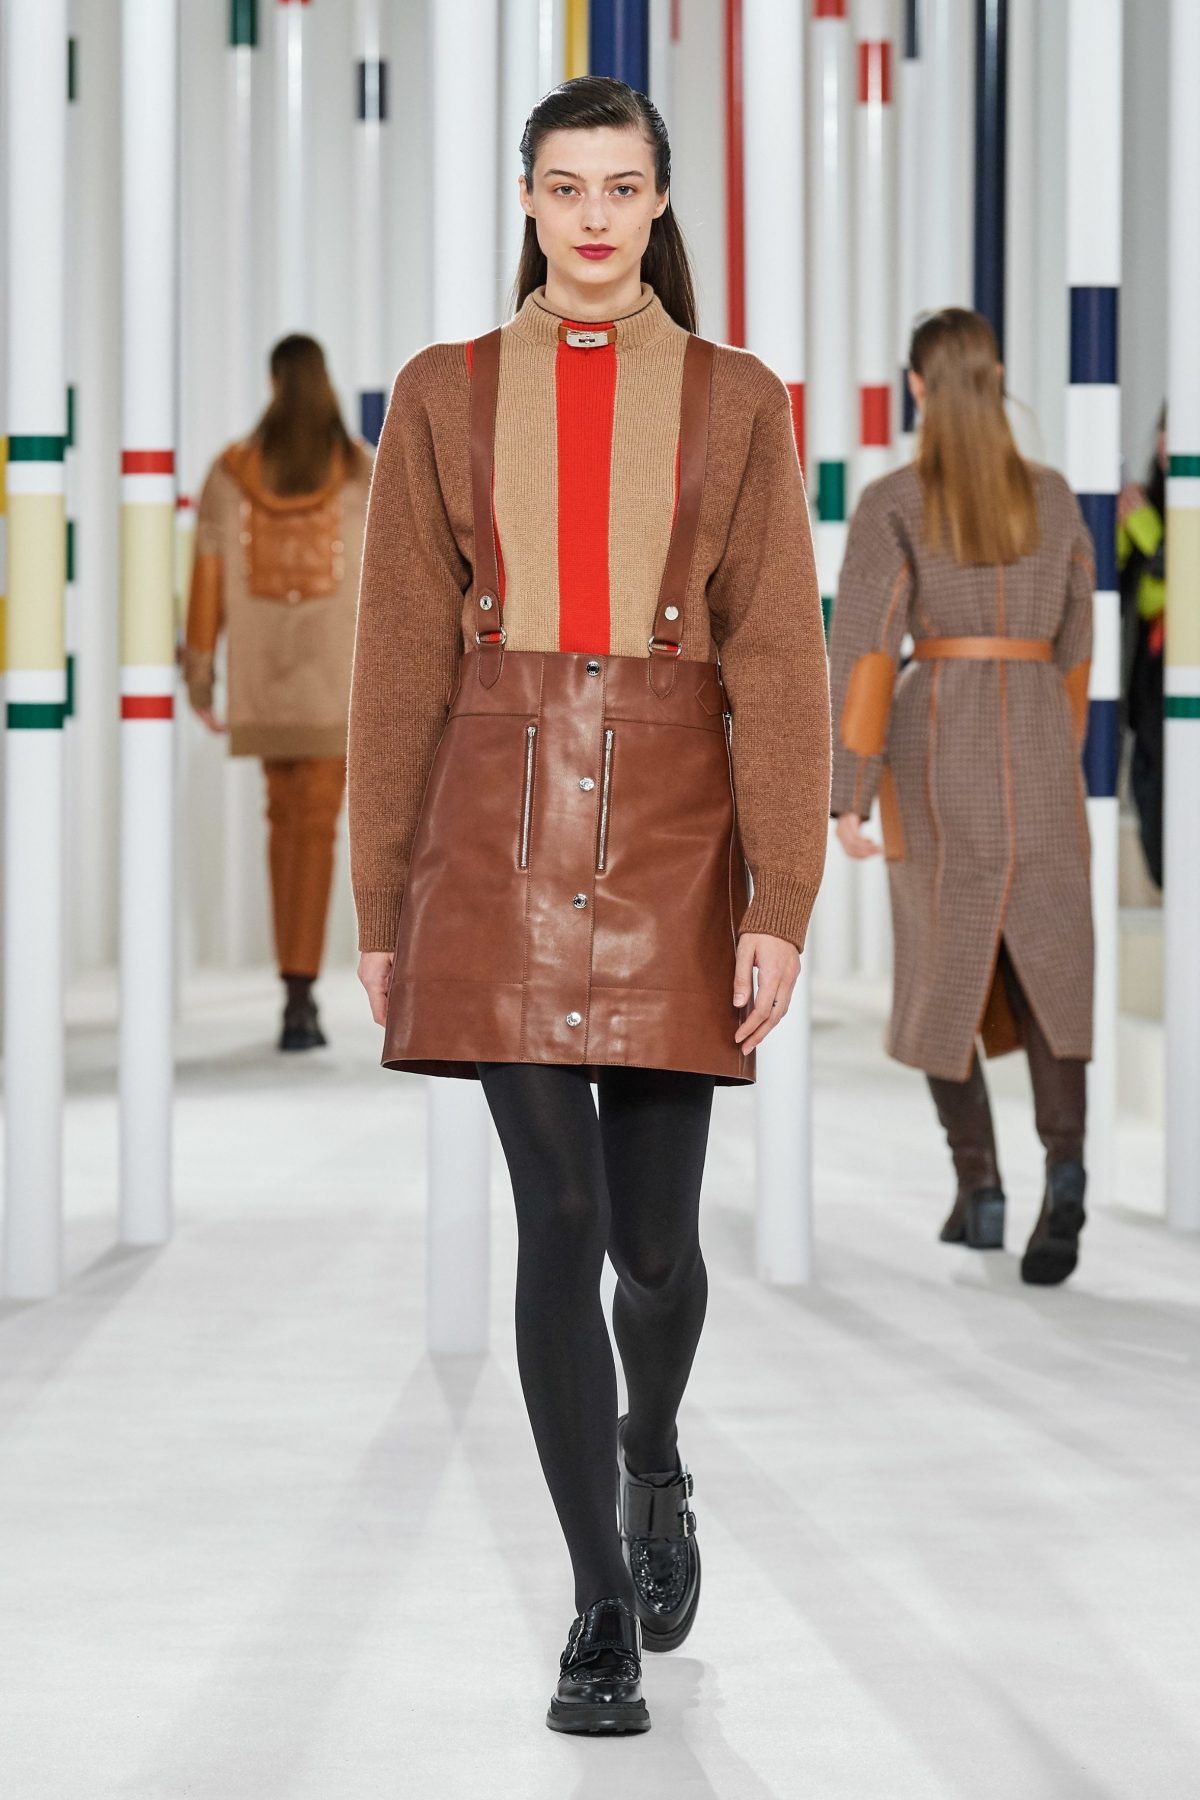 Hermès Autumn/Winter 2020 Collection Show Review